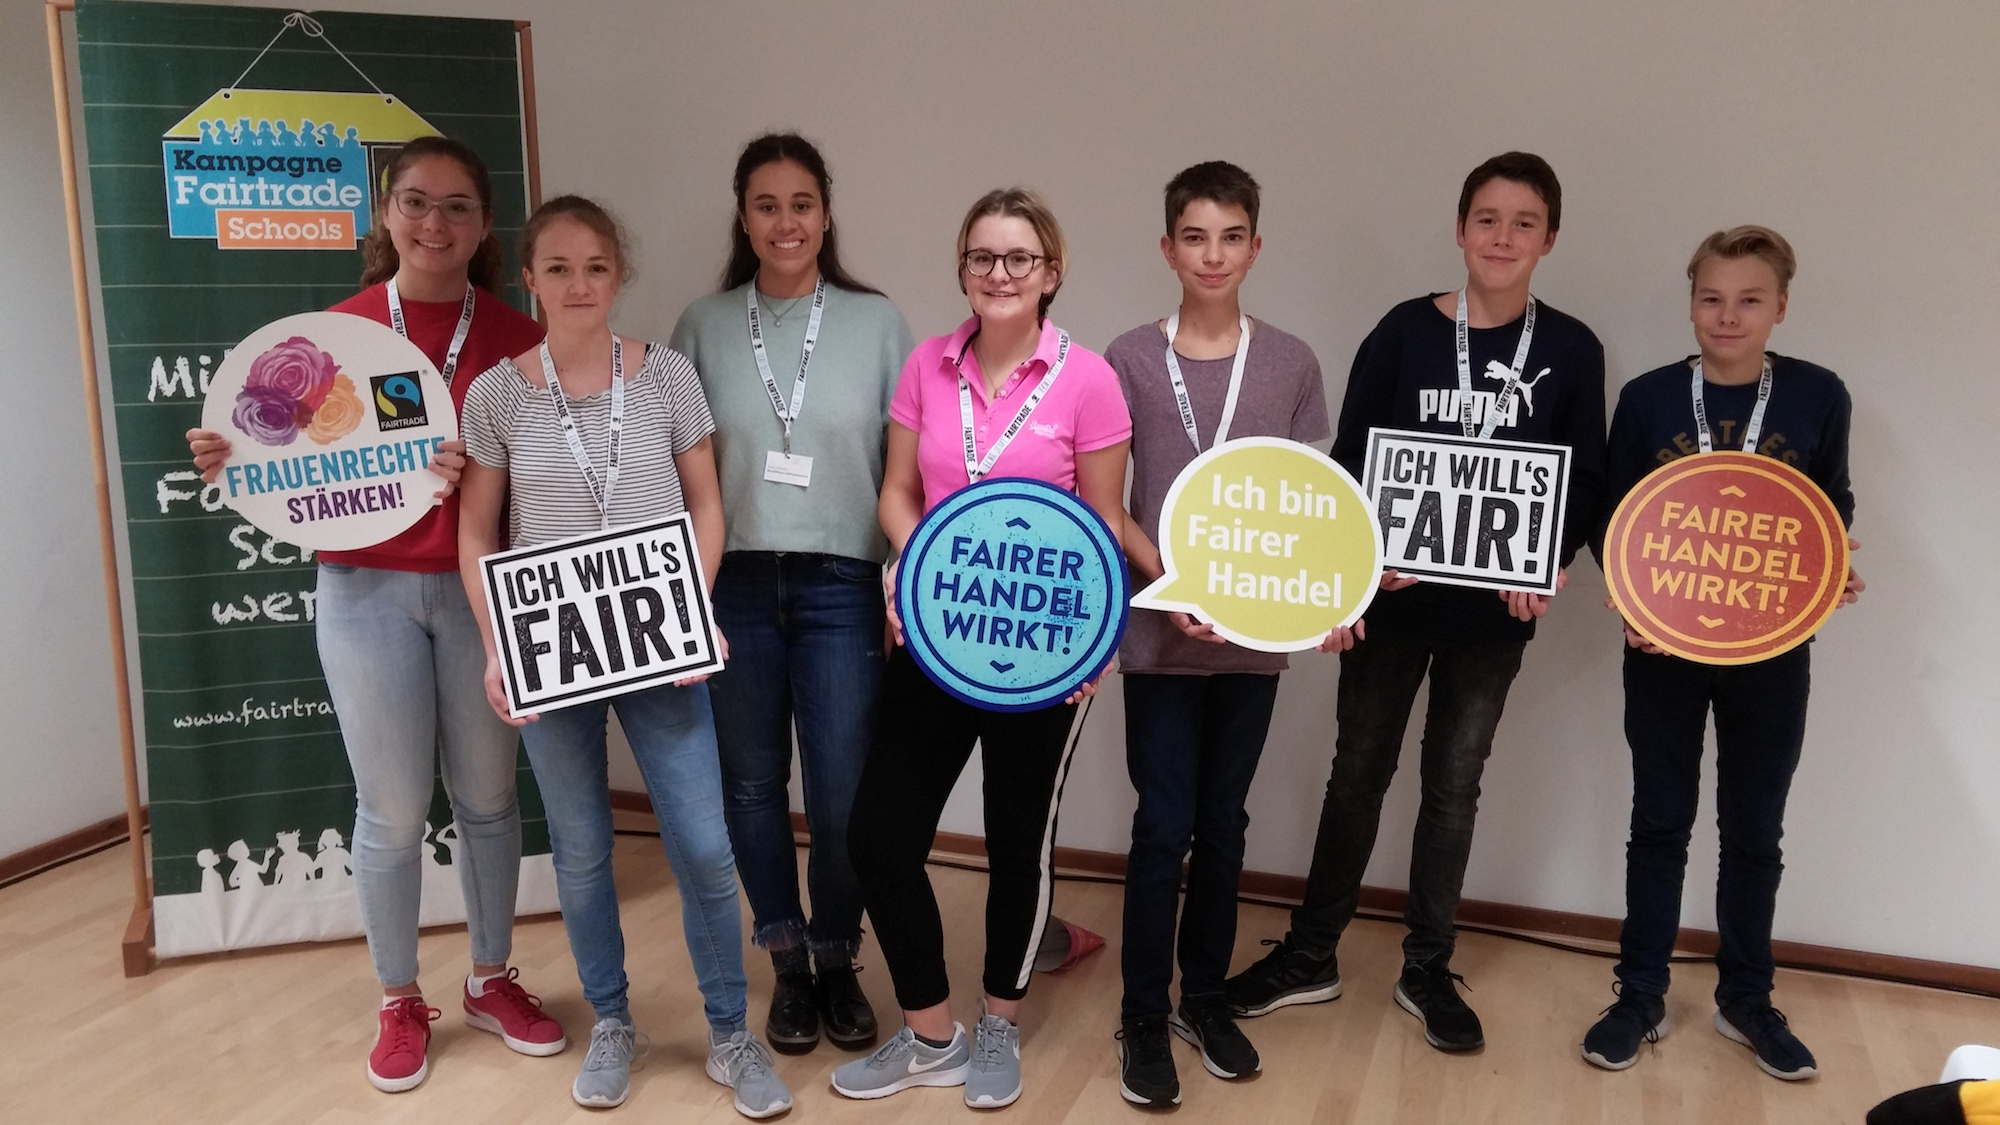 Eine Gruppe bei der Fairtrade-Akademie in Duisburg, wo sie Workshops besucht und eine Urkunde als Fairtrade-Botschafter bekommen hat. (c) Bischöfliche Liebfrauenschule Eschweiler